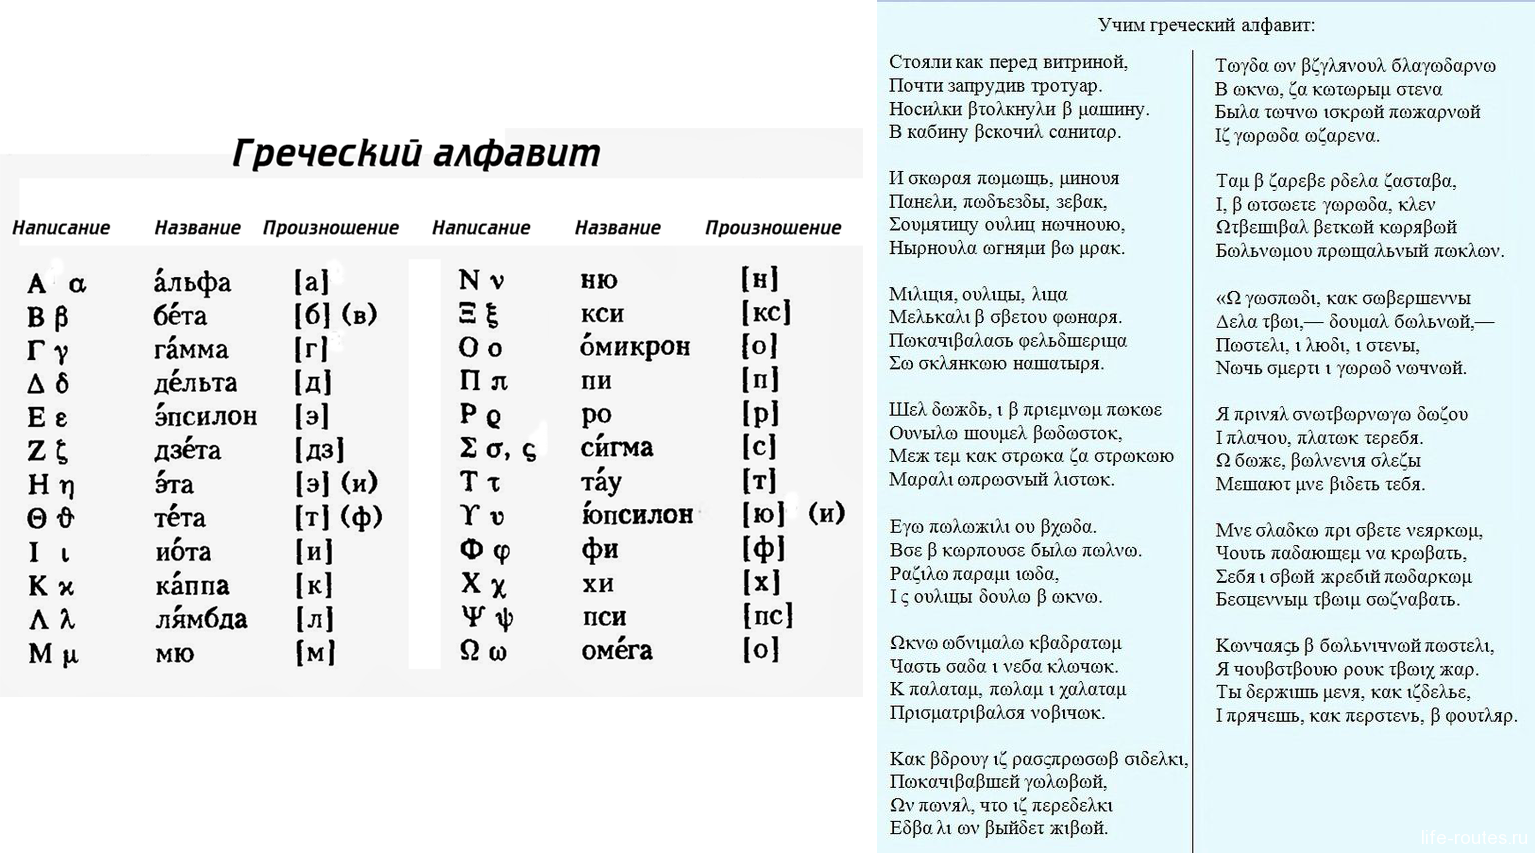 Греческие песни перевод. Греческий алфавит с транскрипцией. Учим греческий язык с нуля. Произношение букв греческого алфавита. Произношение греческих слов.